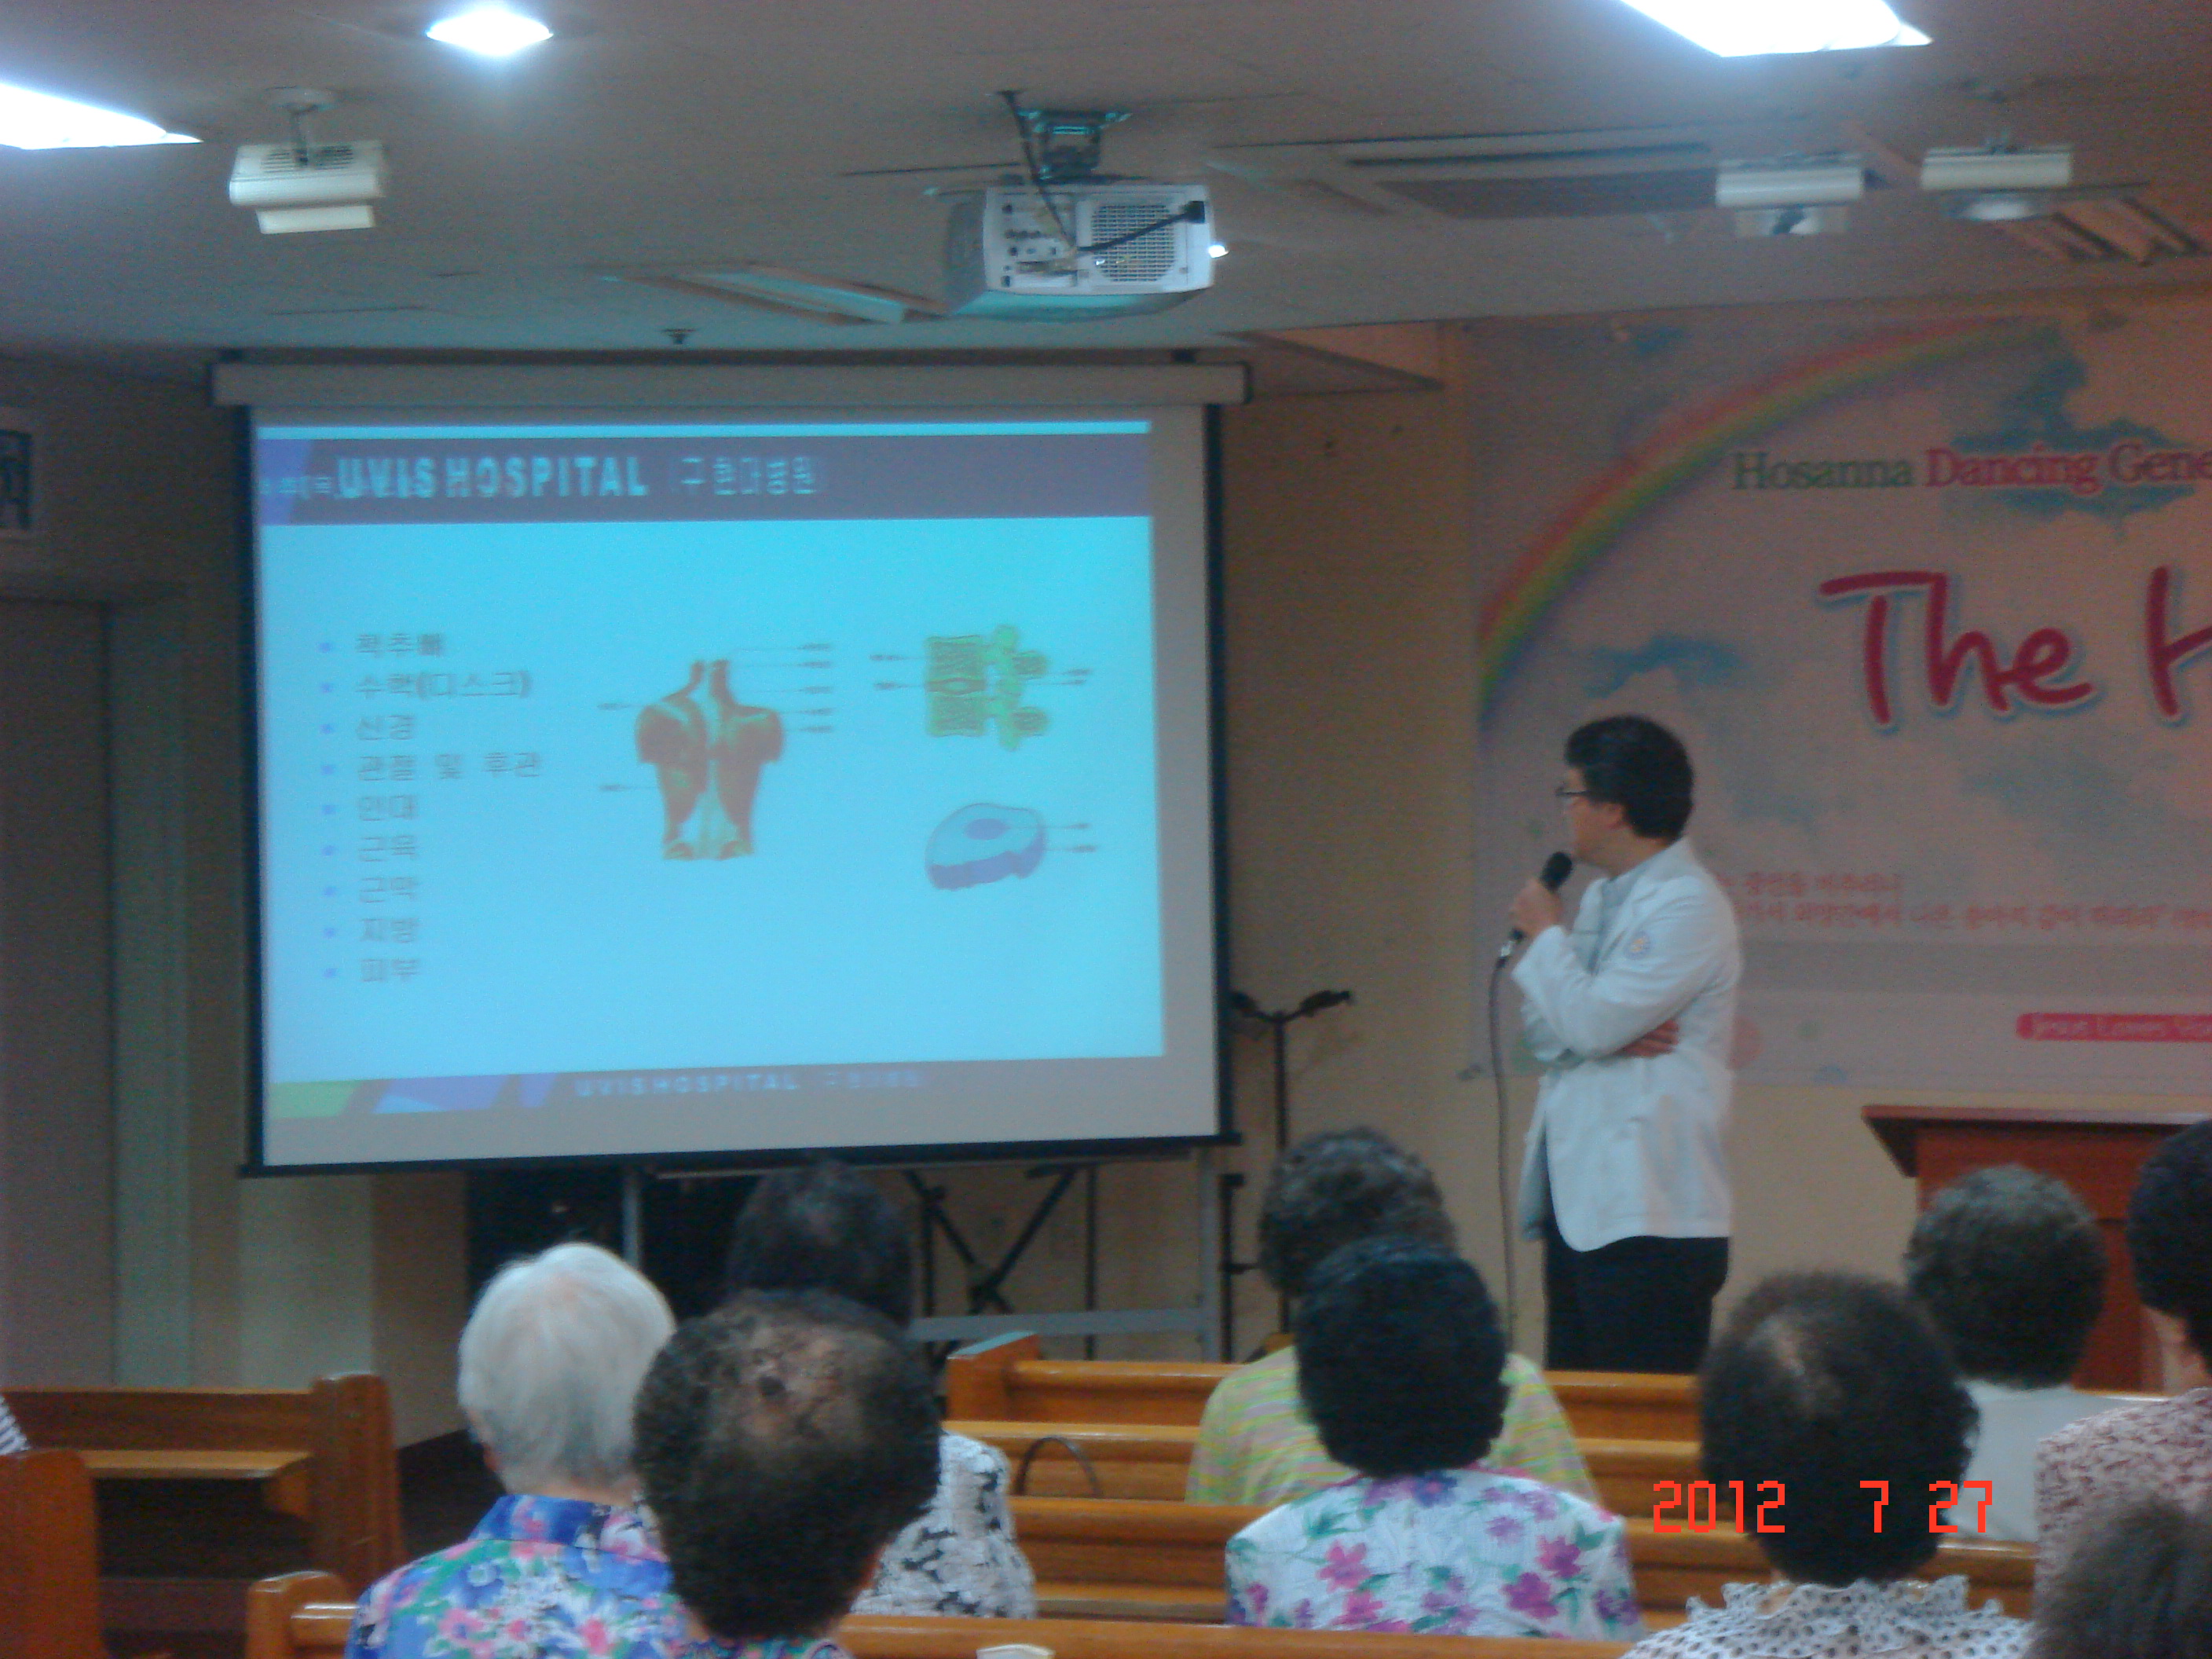 2012년 7월 27일 - 호산나교회 의료봉사 게시글의 2번째 첨부파일입니다.